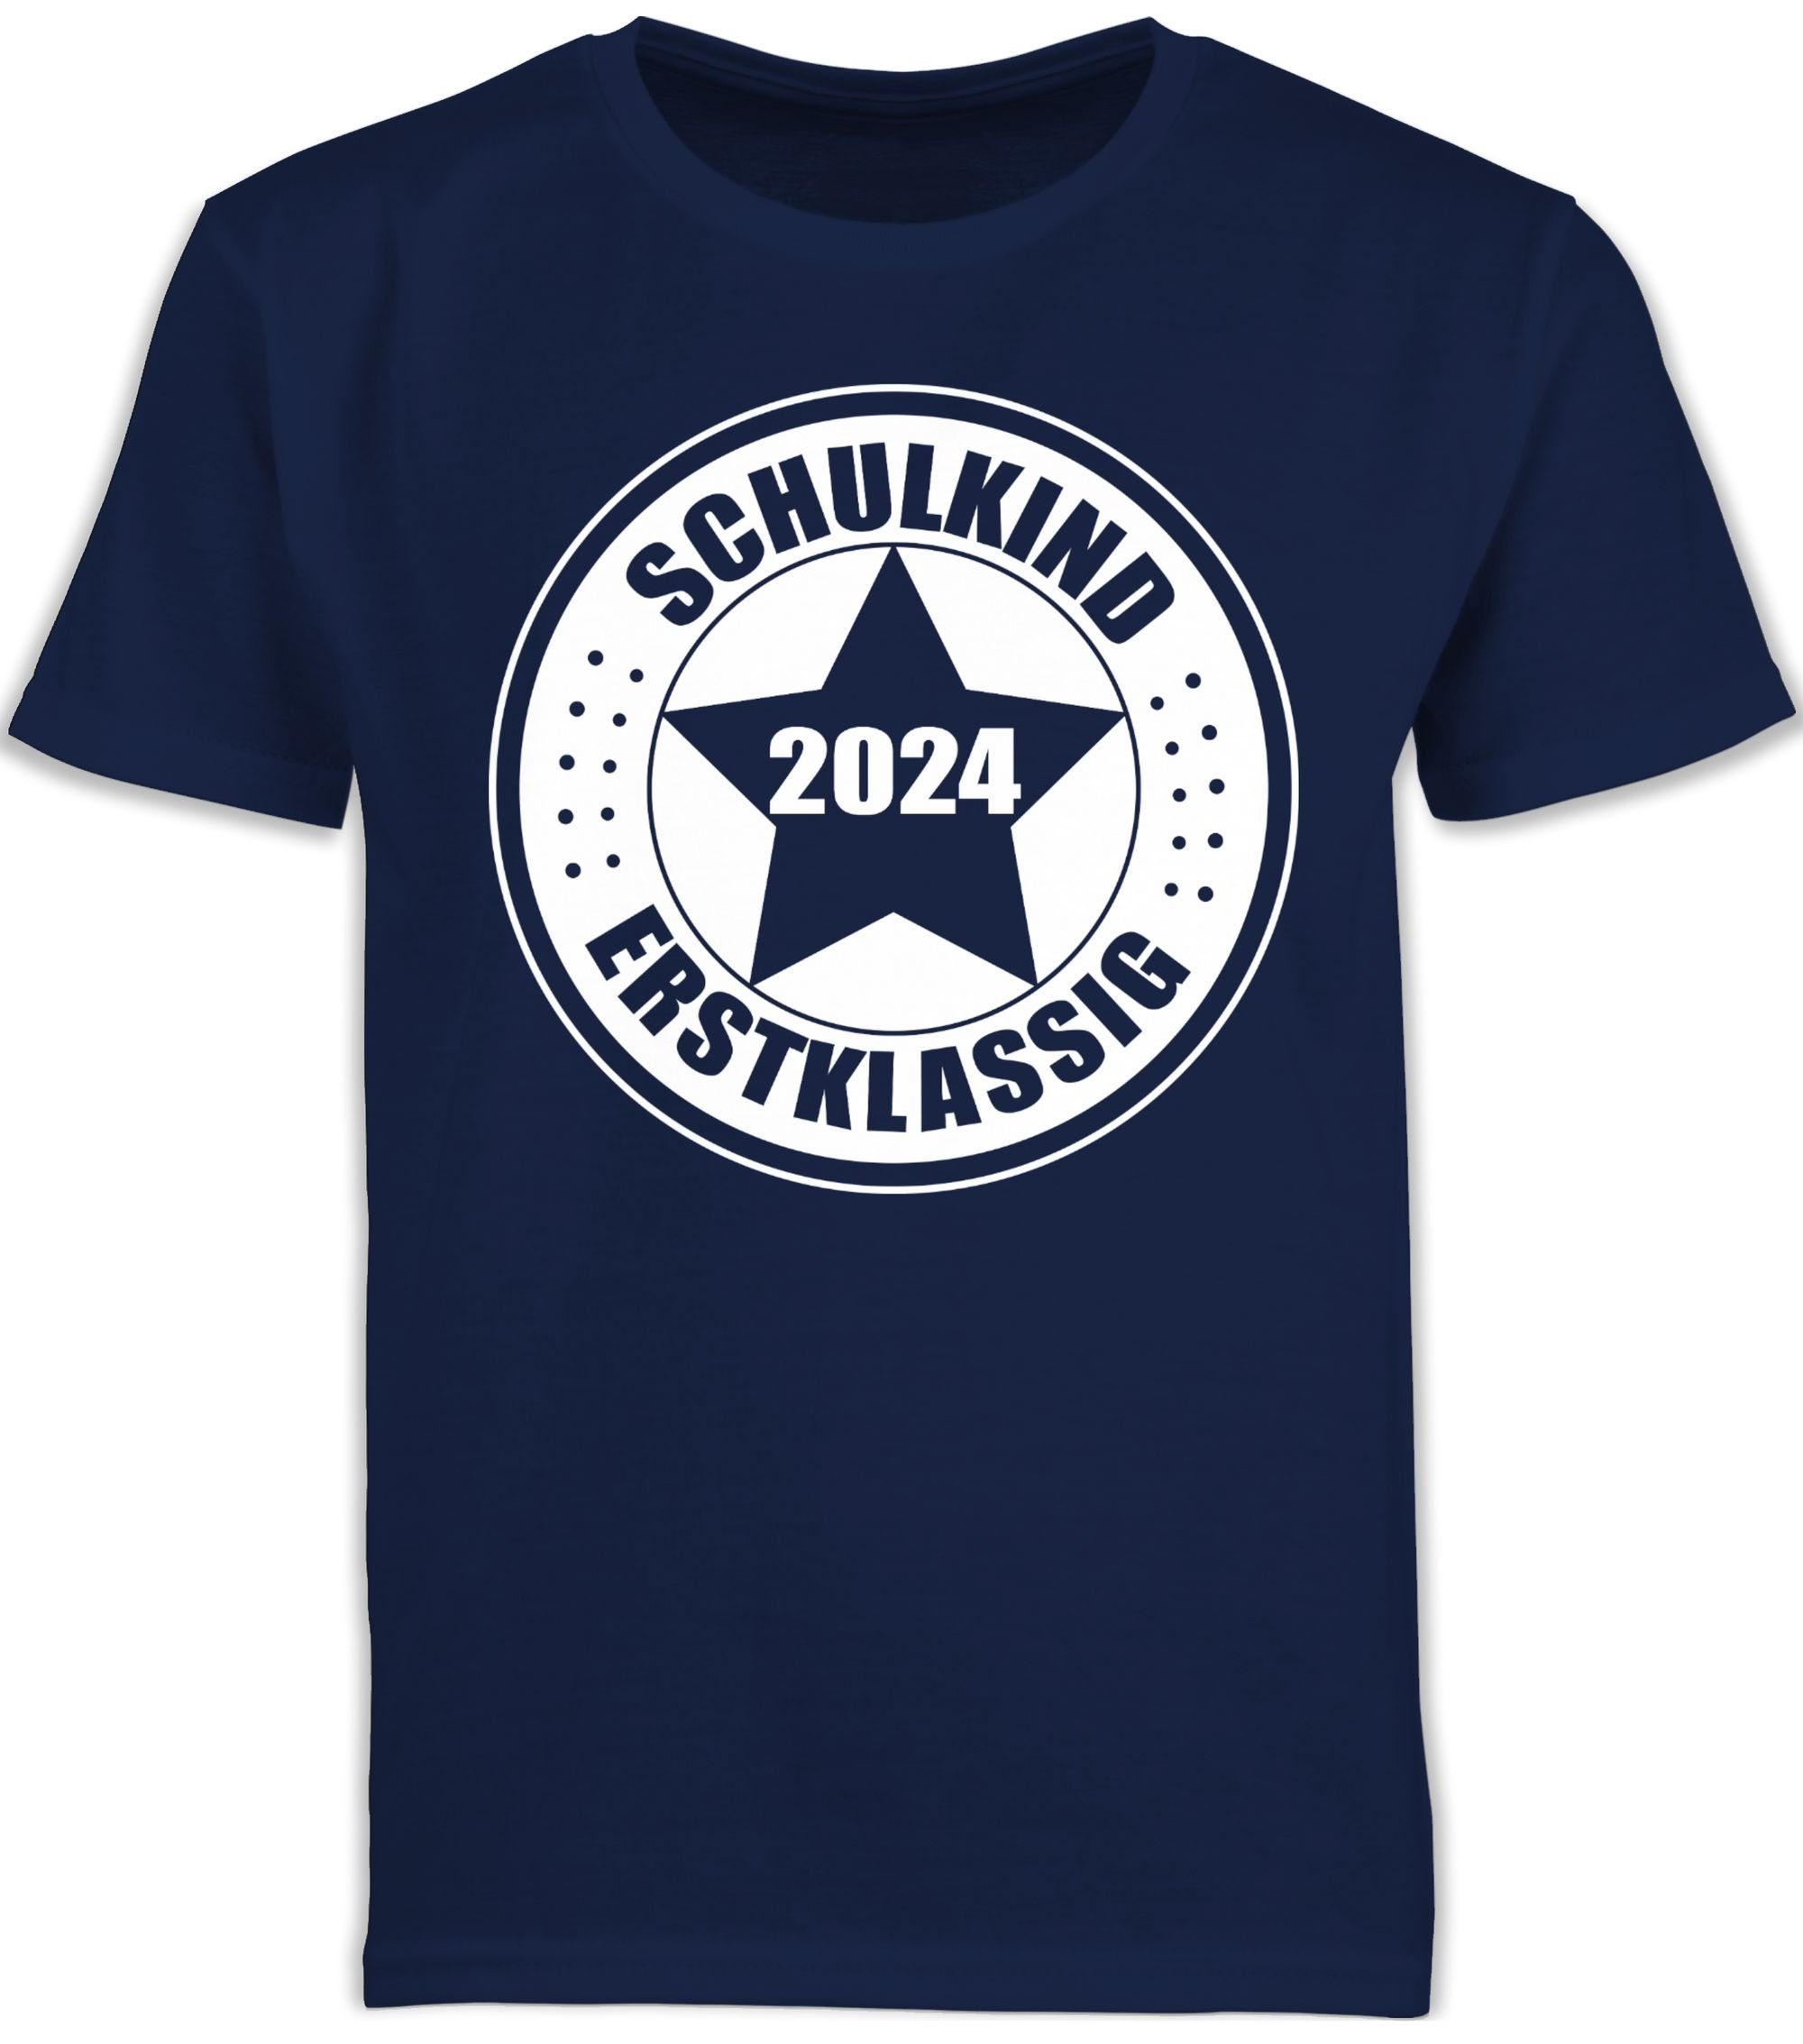 Shirtracer T-Shirt Schulkind 2024 - Erstklassig Einschulung Junge Schulanfang Geschenke